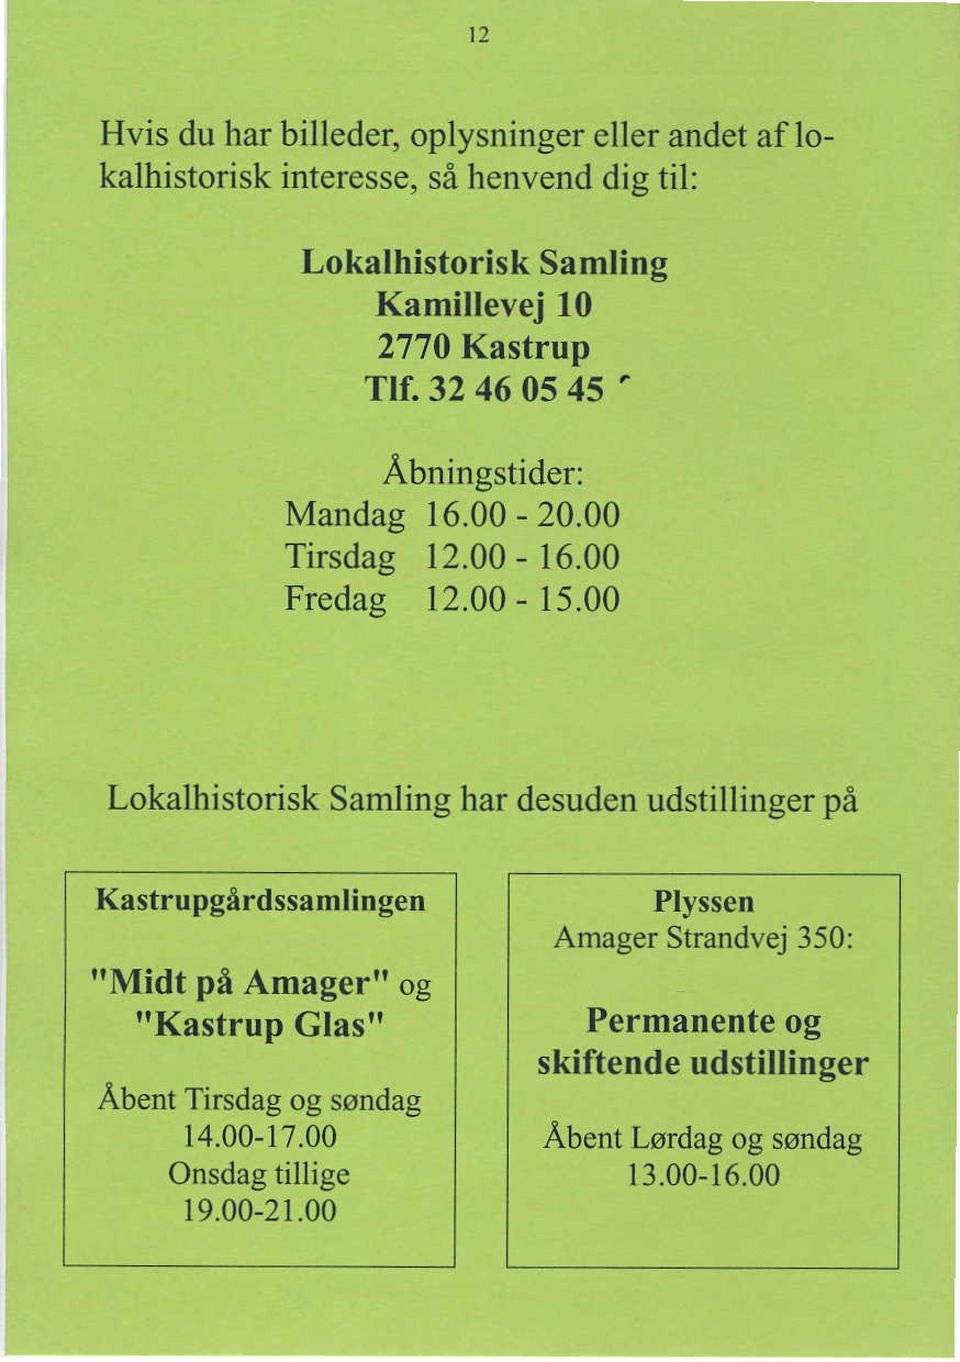 00 Lokalhistorisk Samling har desuden udstillinger p6 Kastrupgirdssamlin gen ItMidt pfr Amagertr og "Kastrup Glas" Abent